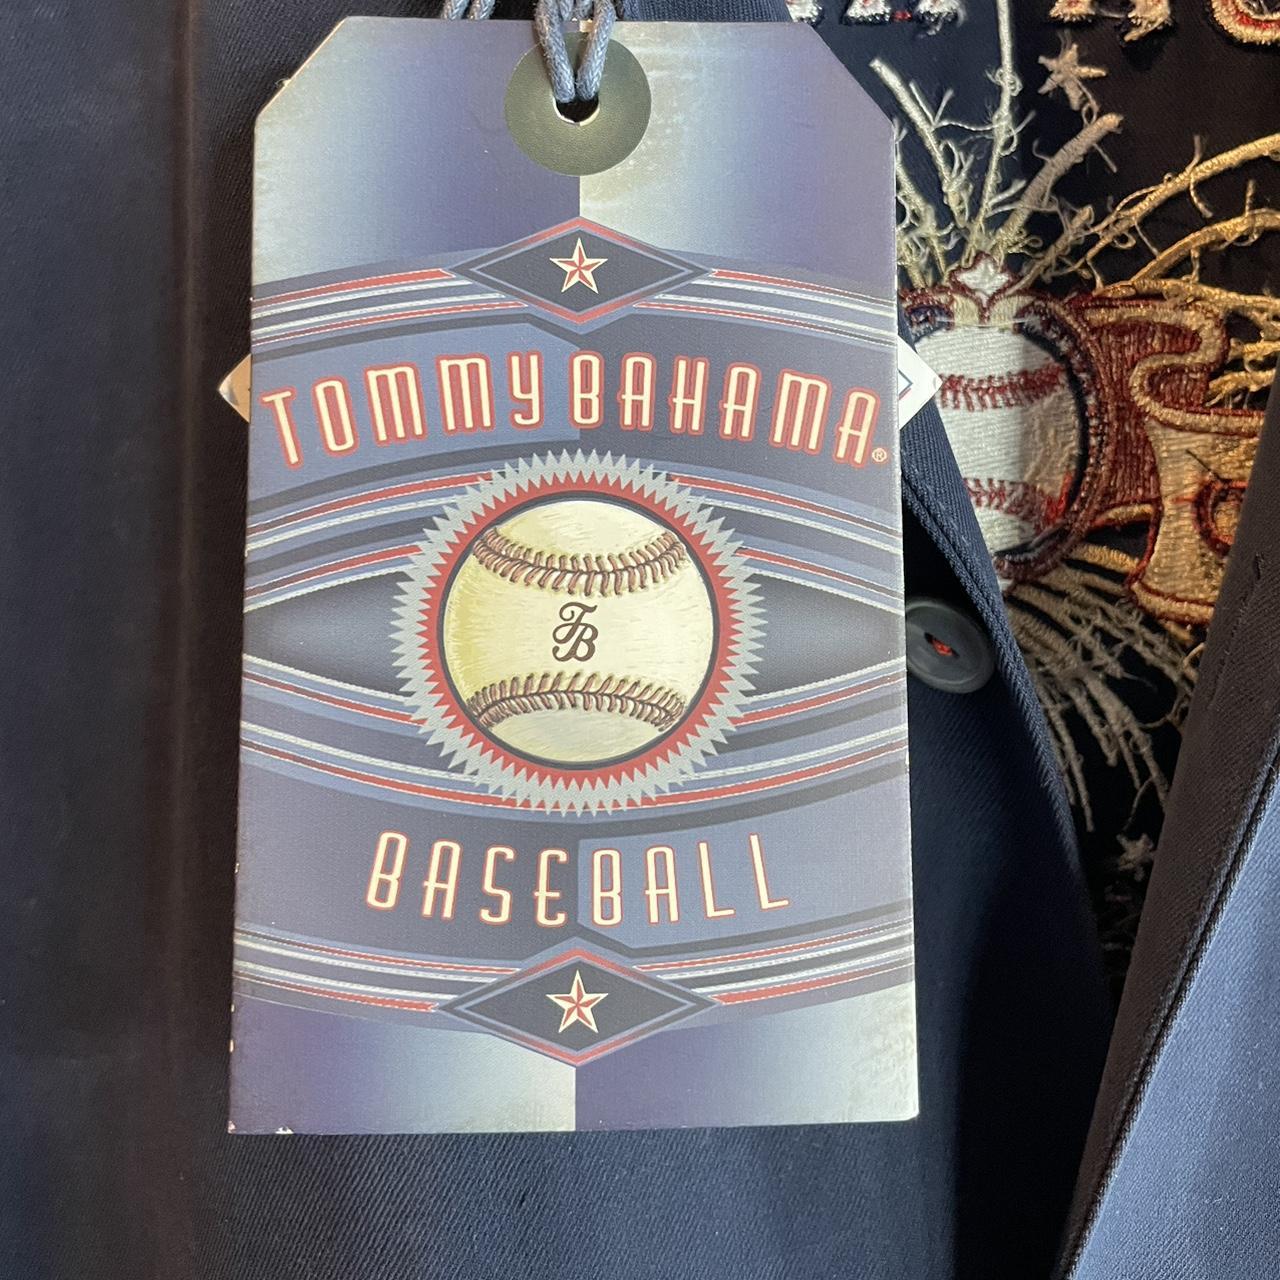 Tommy Bahmama x Boston Red Sox Shirt “Island League” - Depop